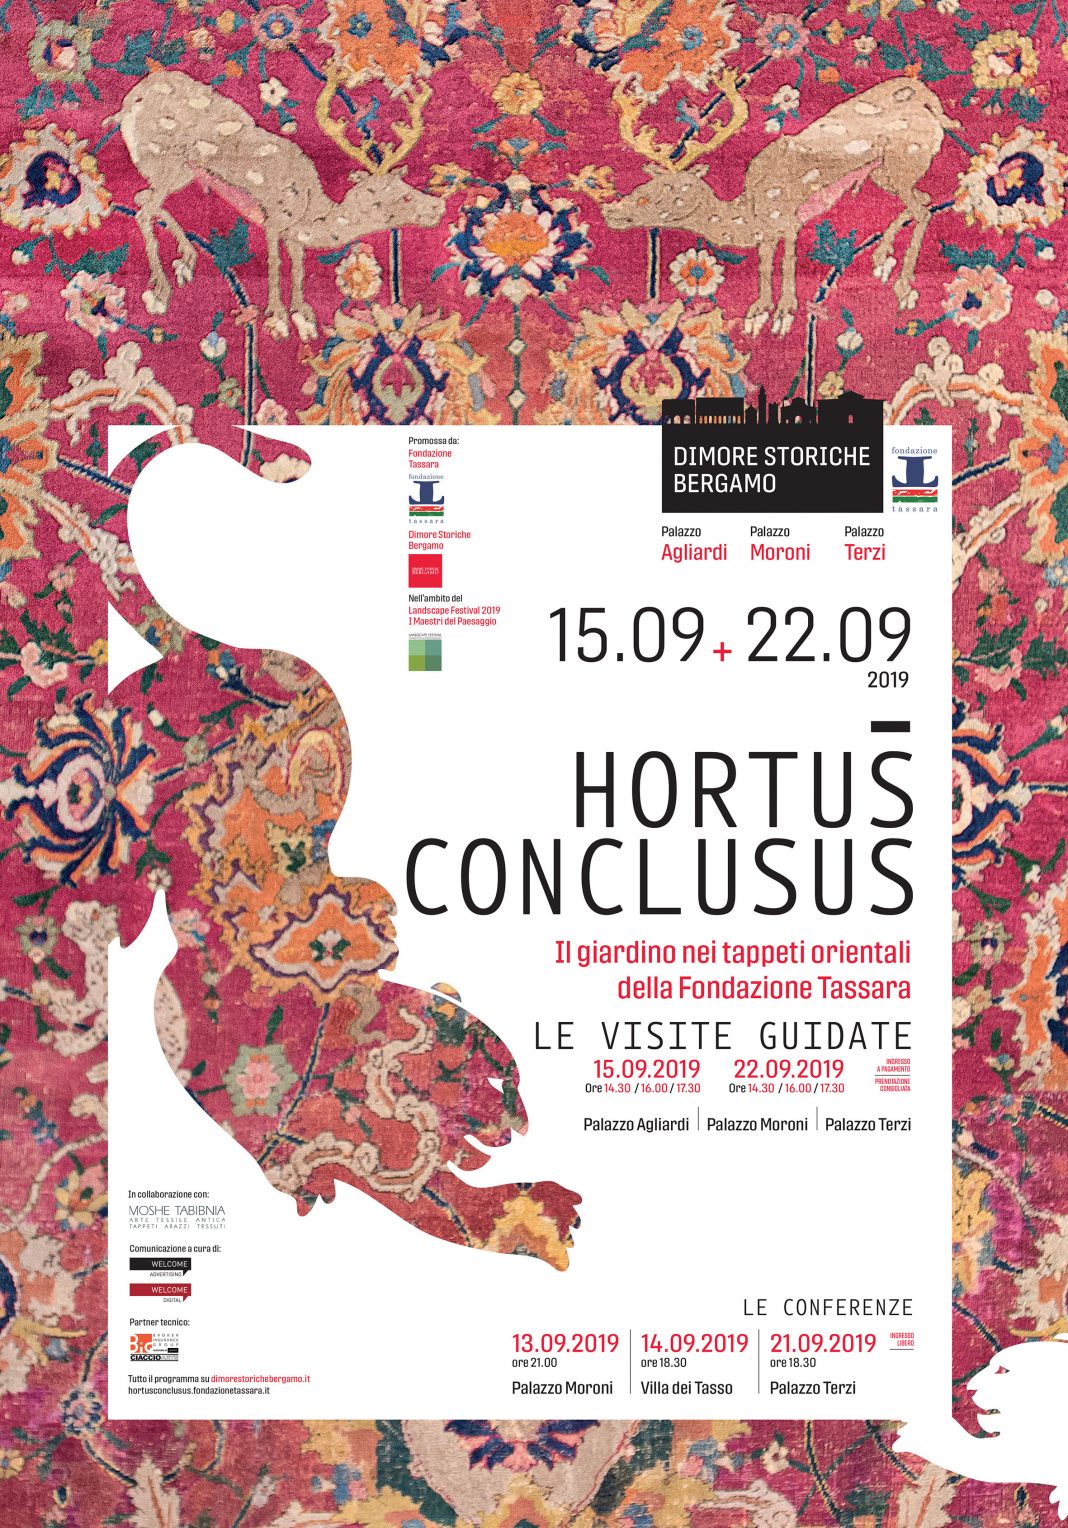 Hortus Conclusus. Il Giardino nei tappeti della Fondazione Tassarahttps://www.exibart.com/repository/media/formidable/11/Locandina-35-x-50-1068x1528.jpg